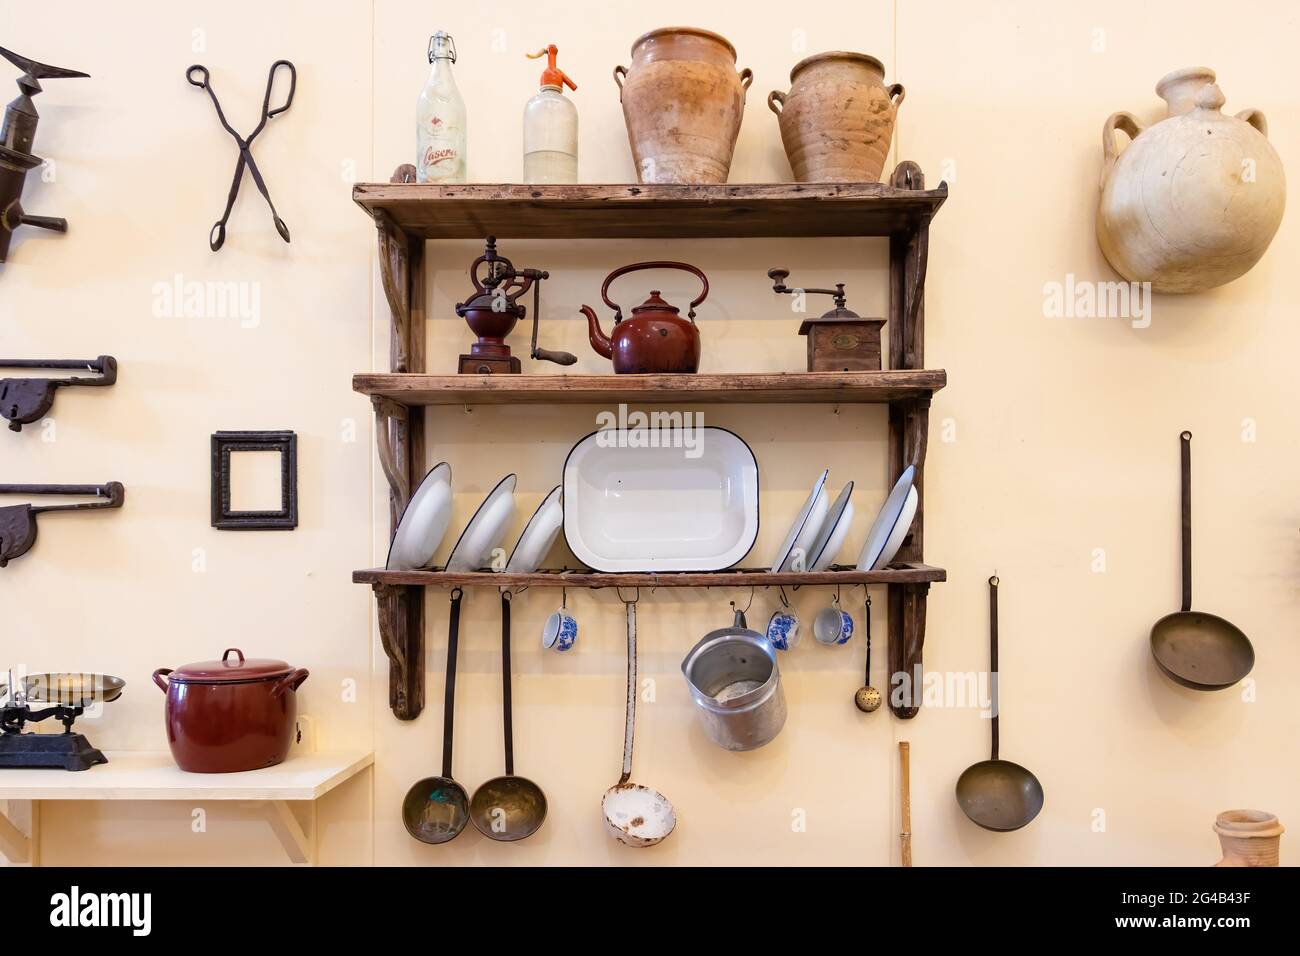 Vejer de la Frontera, Cadix, Espagne - 14 juin 2021 : anciens ustensiles de cuisine sur des étagères en bois et fixés au mur d'une maison andalouse typique en V Banque D'Images